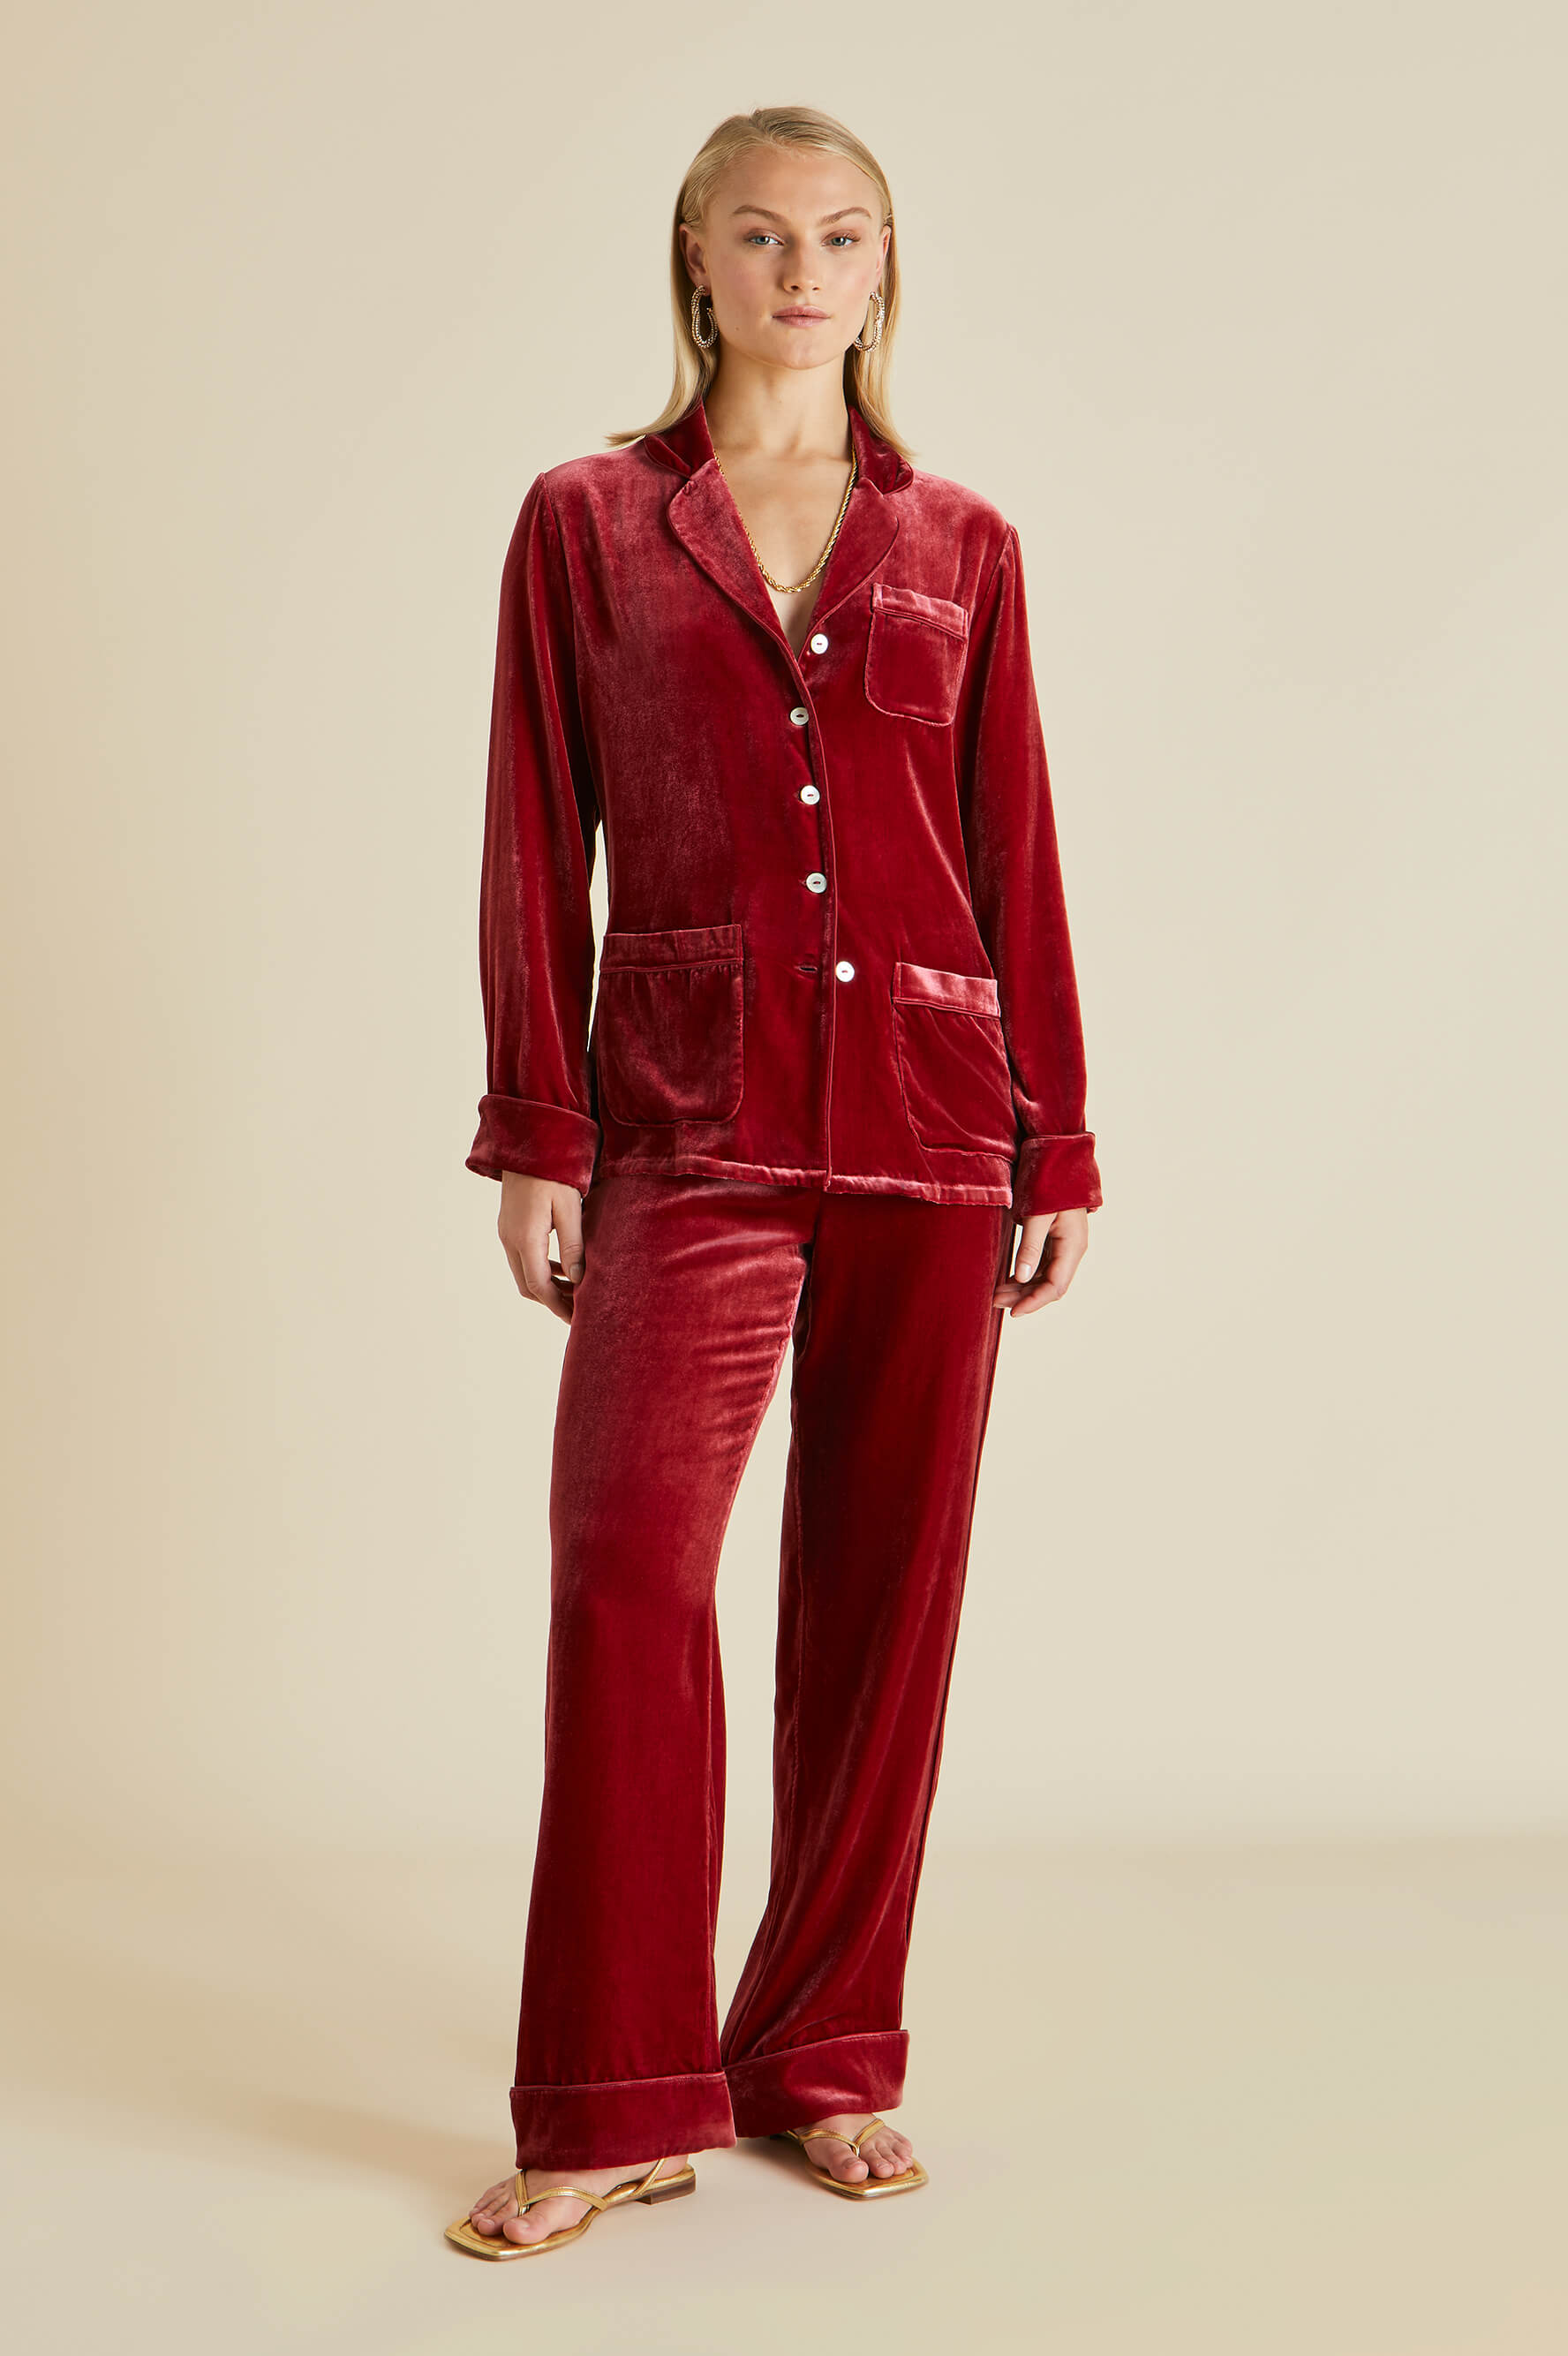 Coco Port Red Pajamas in Silk Velvet